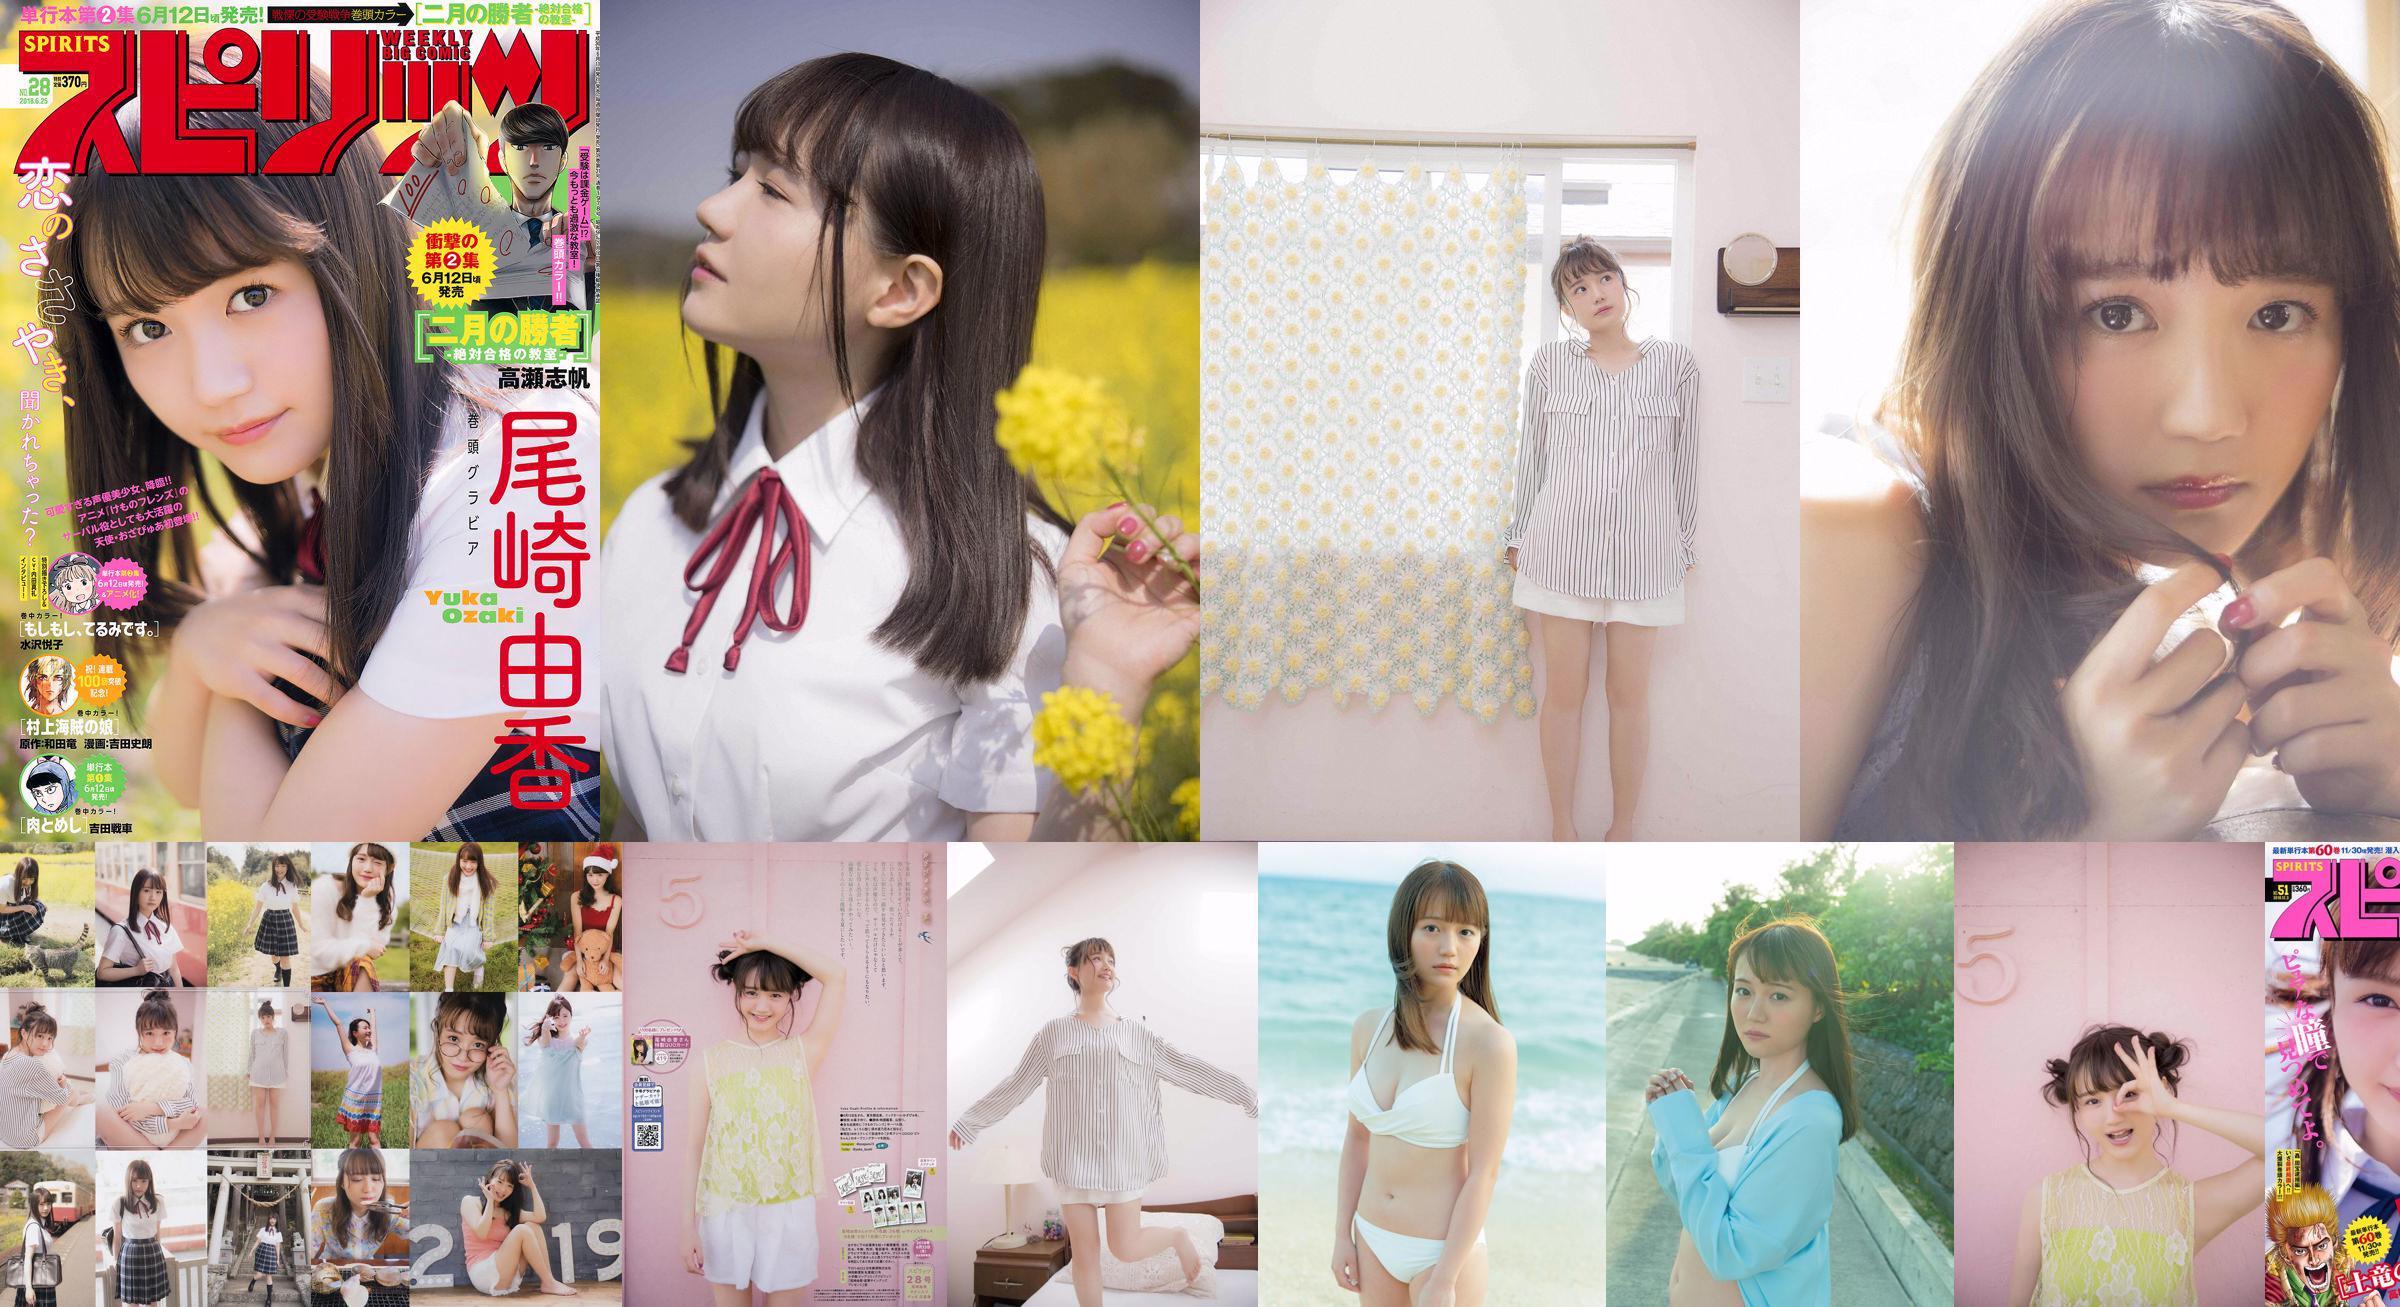 [VENERDI] Yuka Ozaki "Il doppiatore del personaggio principale dell'anime" Kemono Friends "ora indossa un bikini bianco" Foto No.f0121f Pagina 1